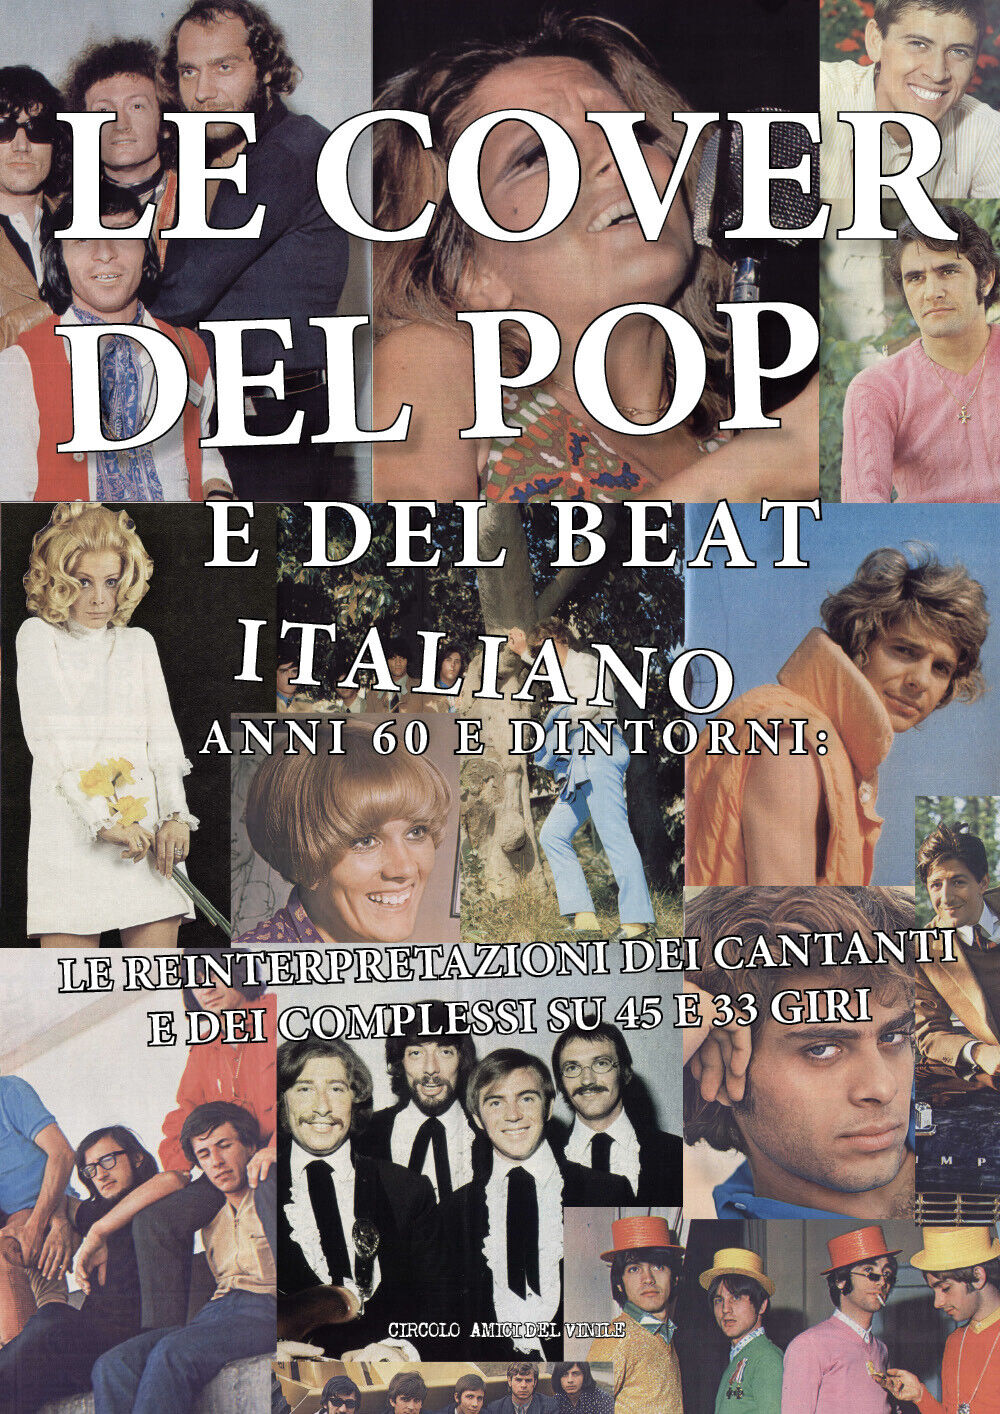 Le cover del pop e del beat italiano anni 60 e dintorni: le reinterpretazioni de libro usato